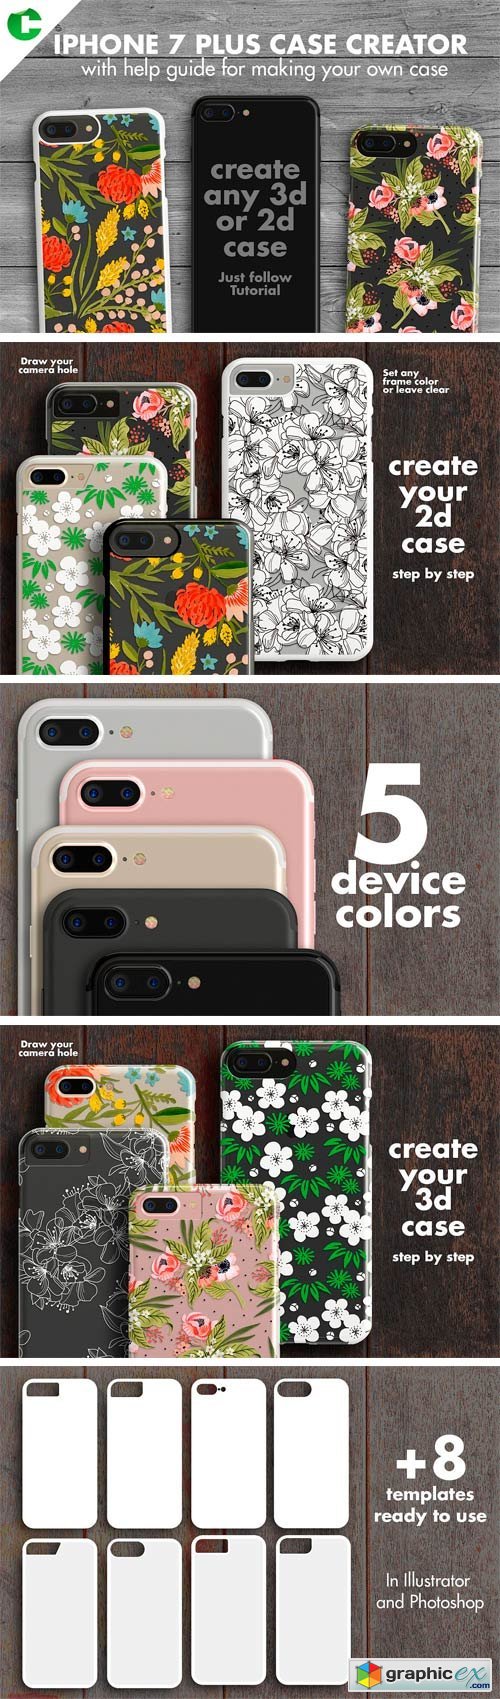 Iphone 7 Plus Case Creator